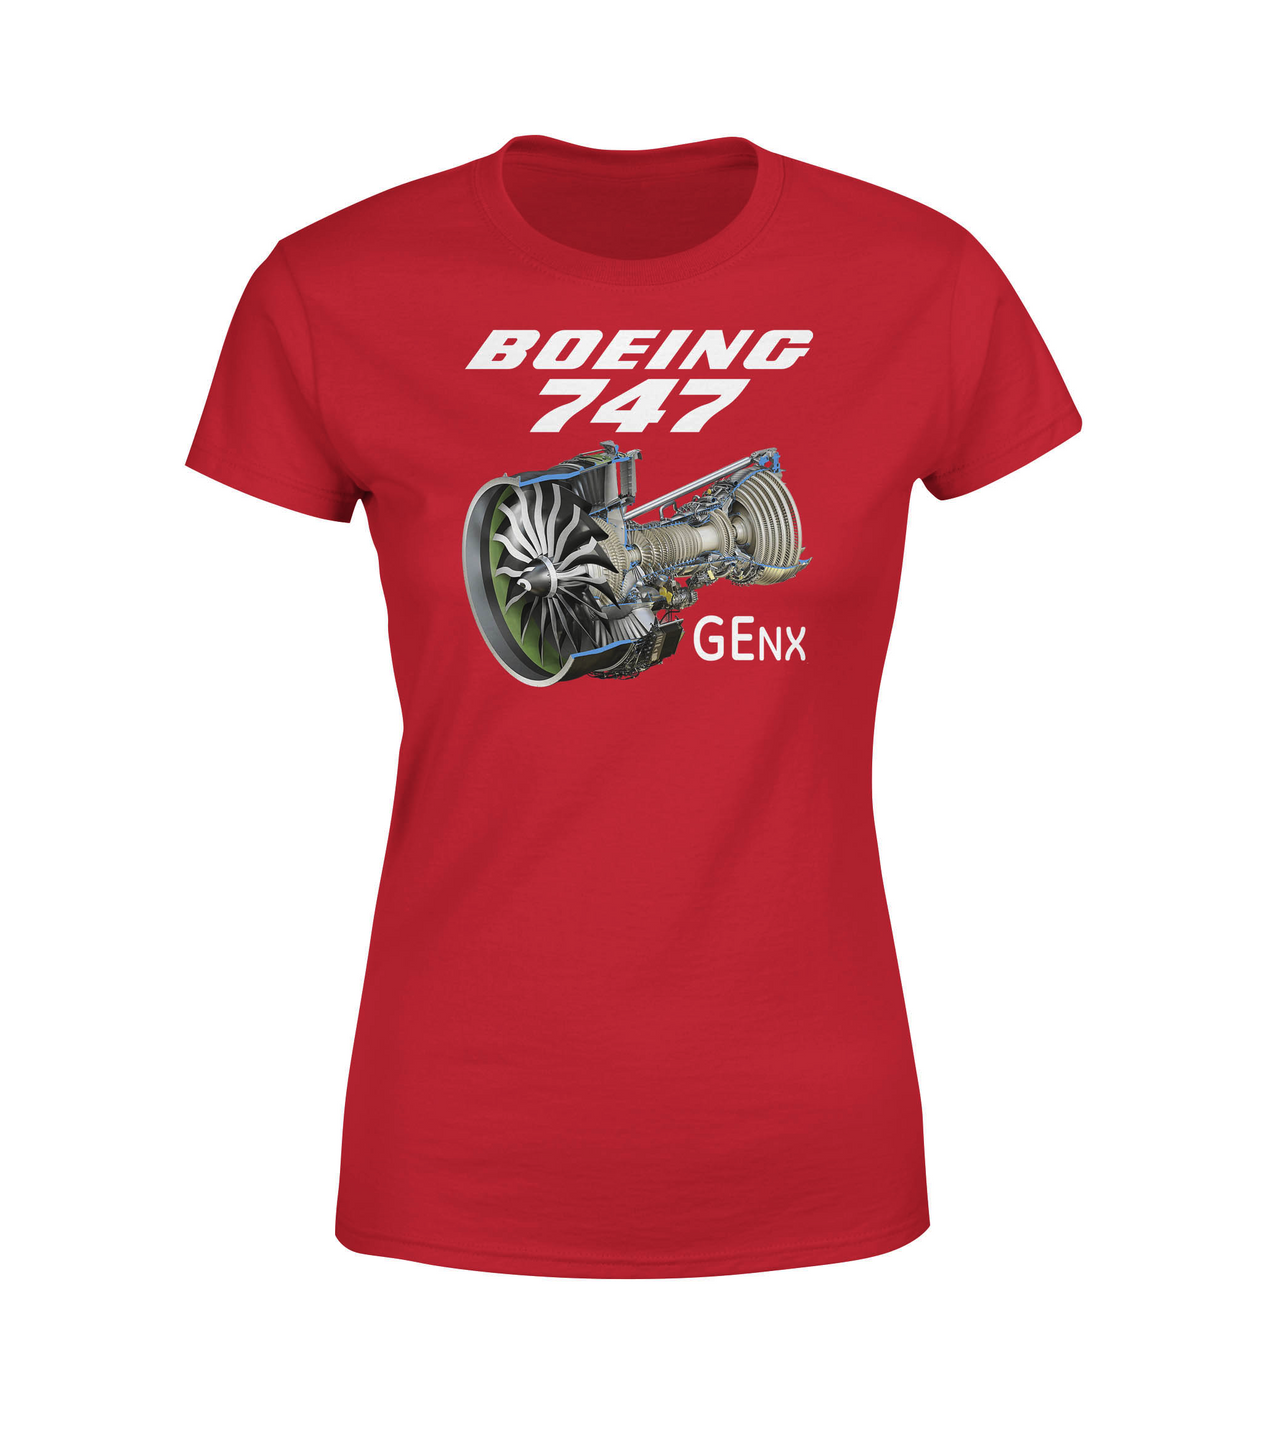 Boeing 747 & GENX Engine Designed Women T-Shirts